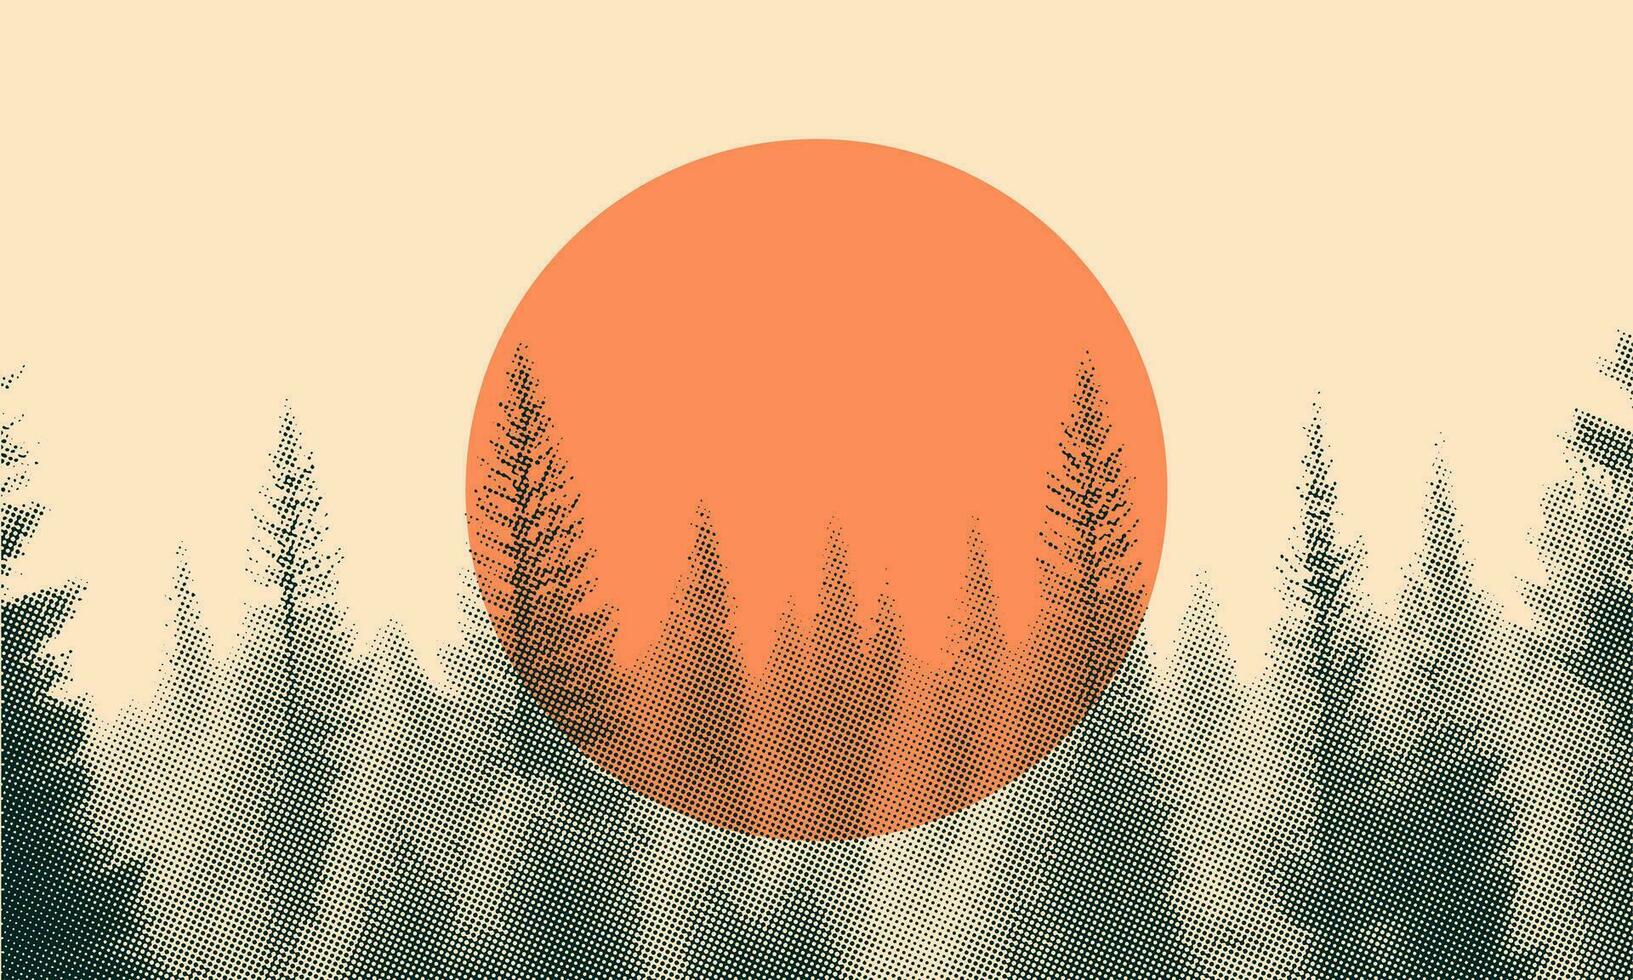 Sonnenuntergang im Wald Vektor Halbton Hintergrund